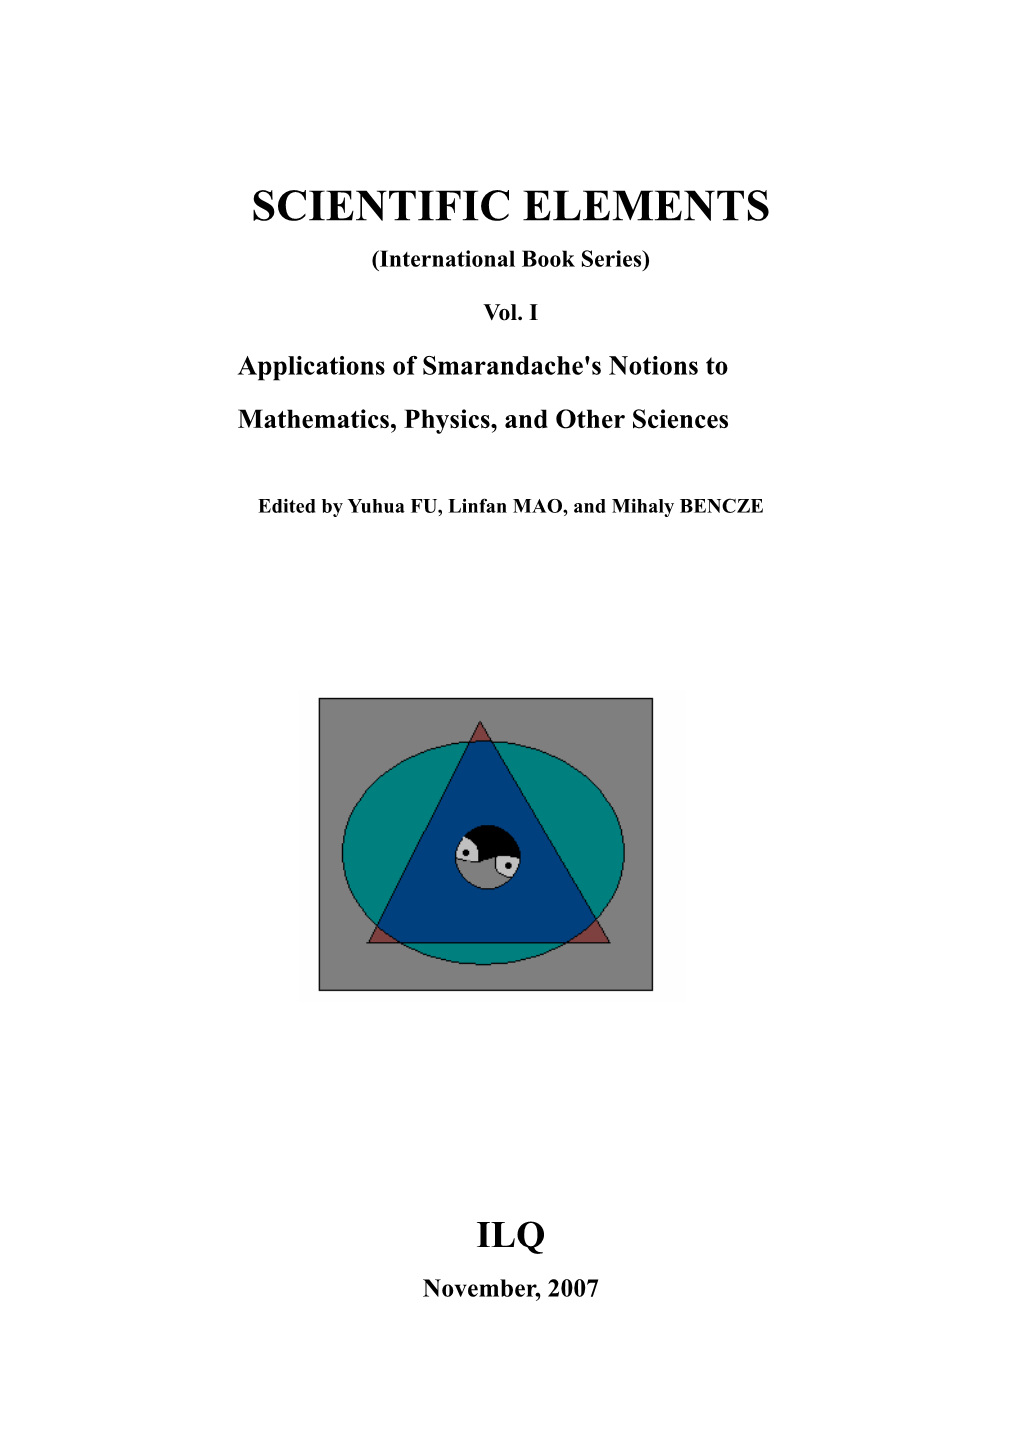 Scientific Elements (Vol. I): Applications of Smarandache's